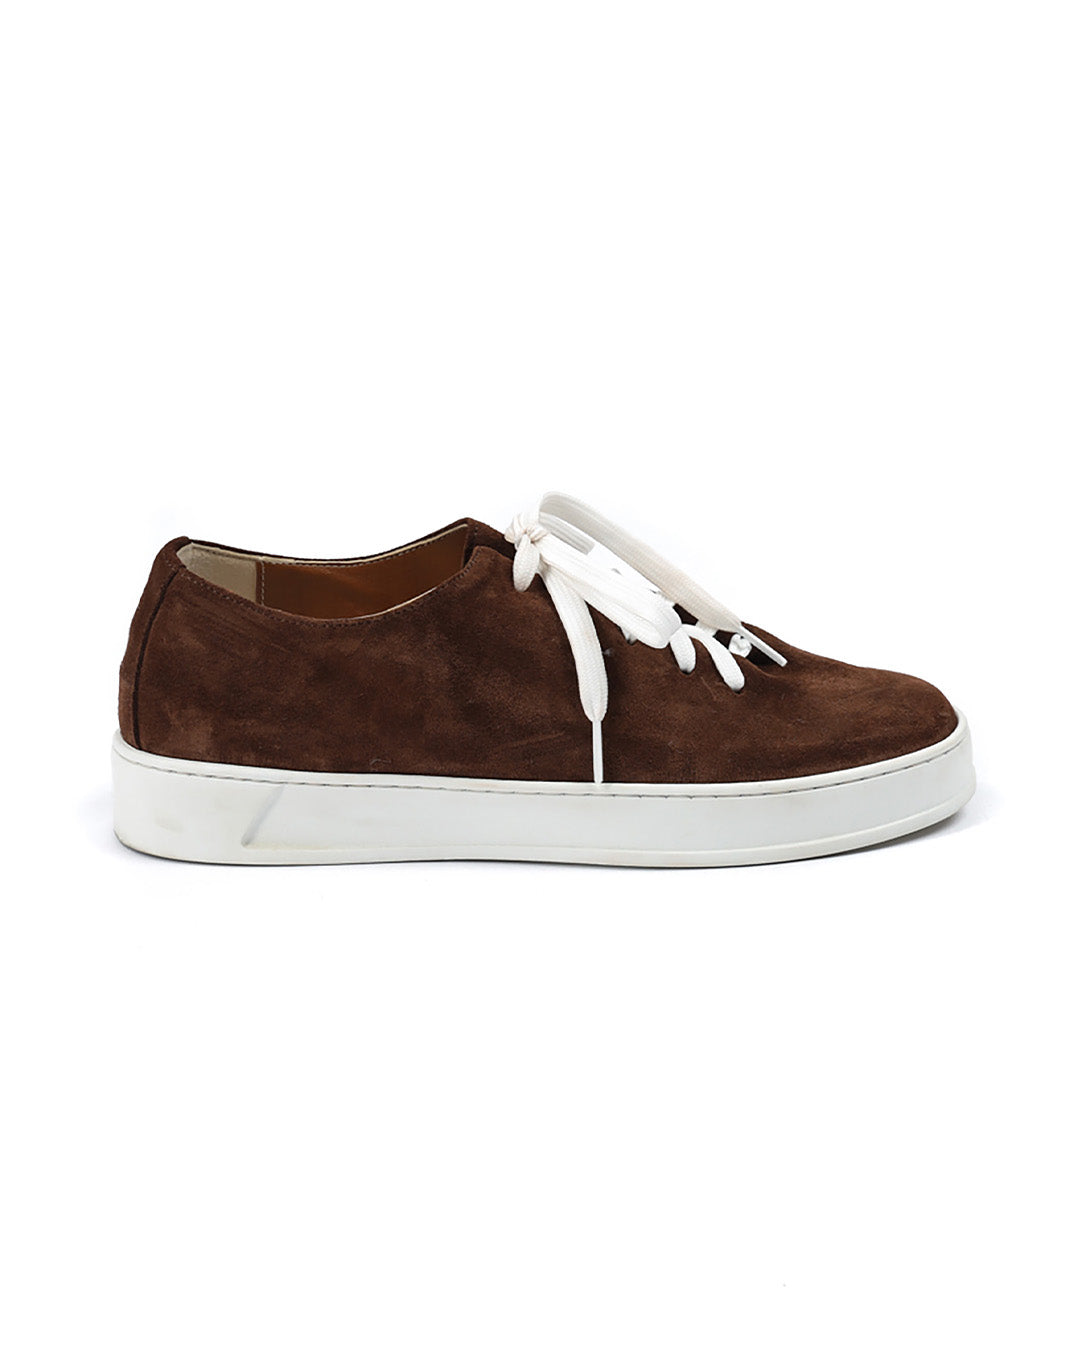 Steph - Dark brown suede sneakers